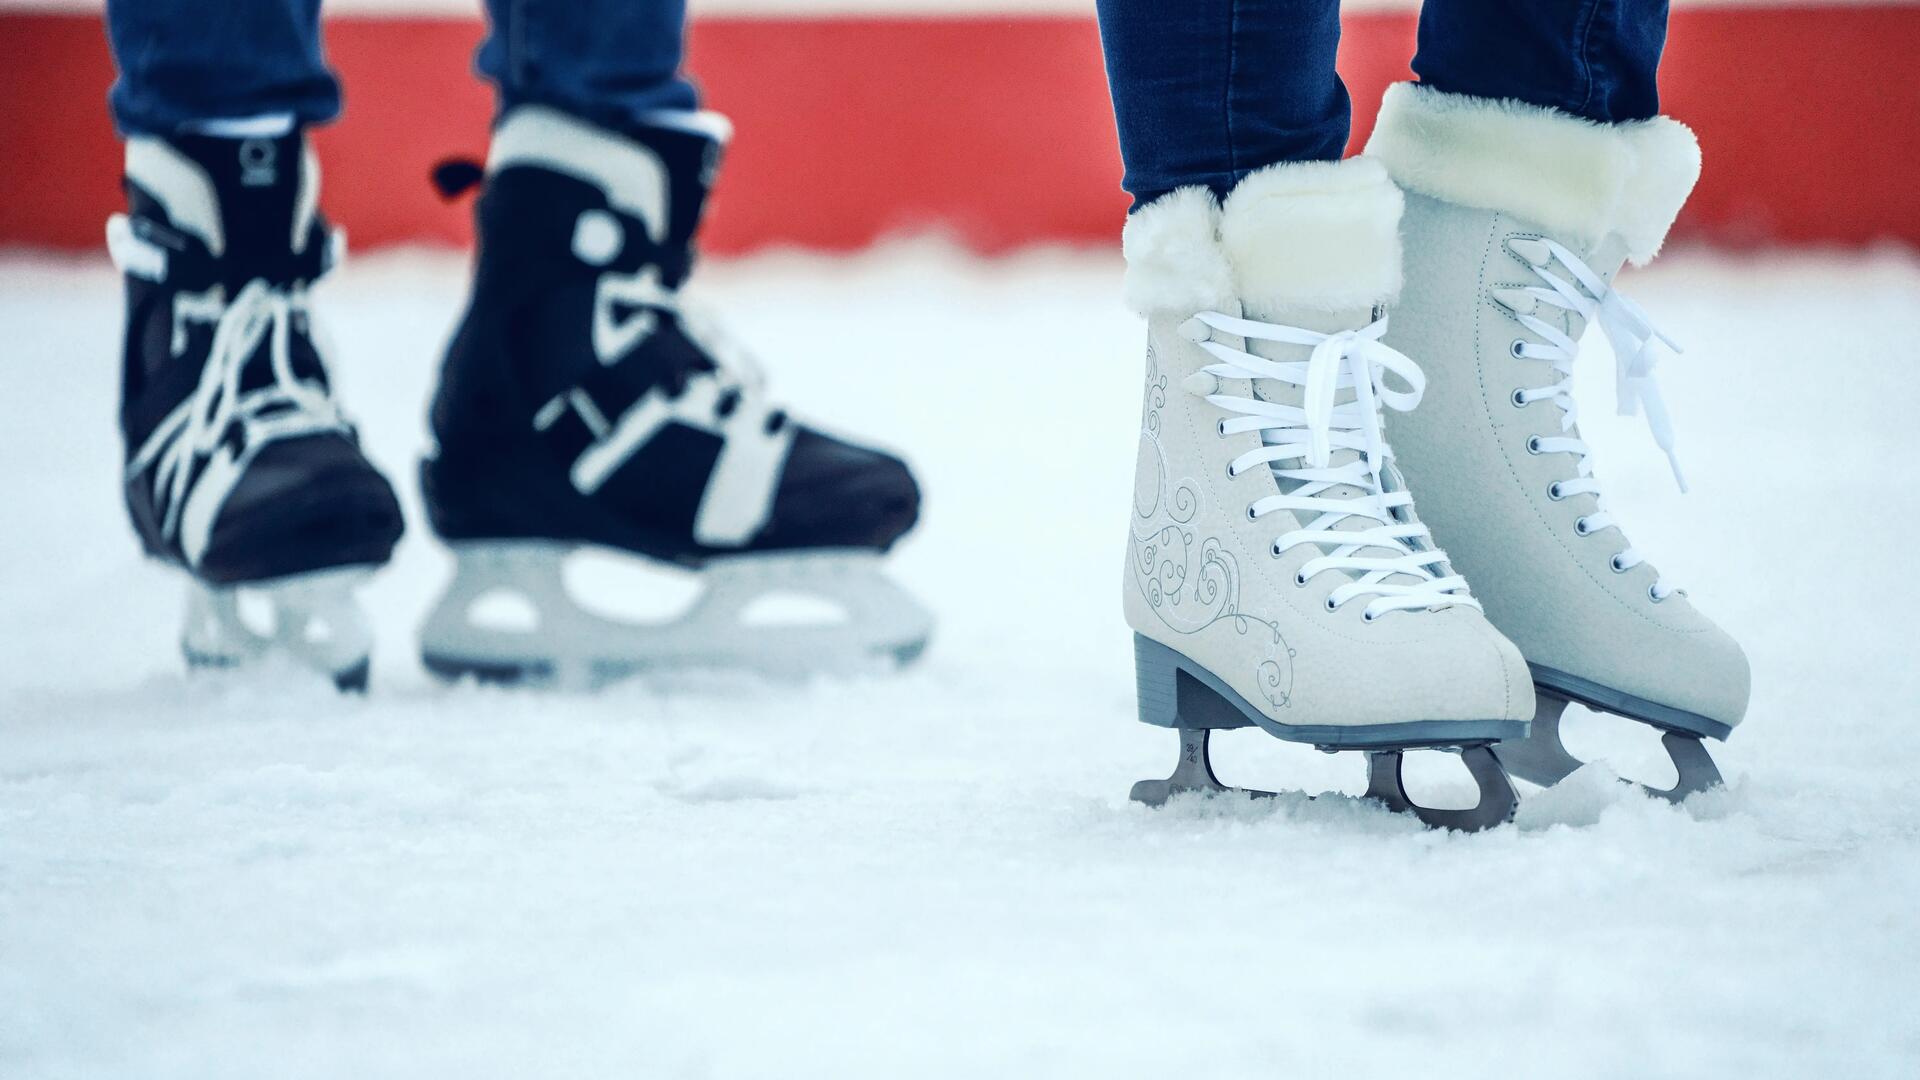 Schaatsen kopen, hoe kies ik de juiste schaatsen?